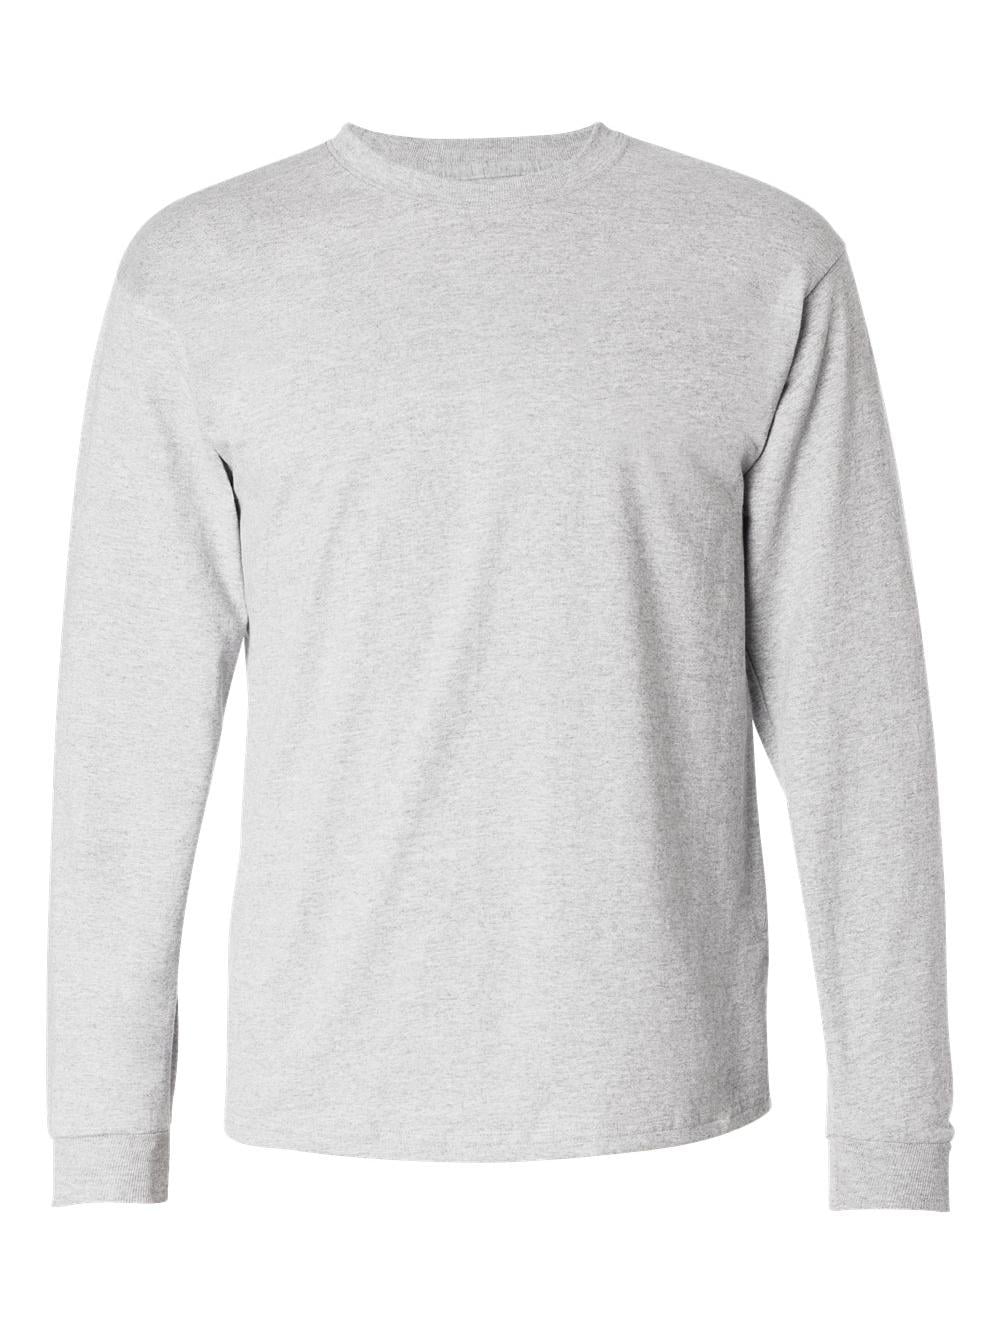 Hanes - Hanes T-Shirts - Long Sleeve Tagless Long Sleeve T-Shirt ...